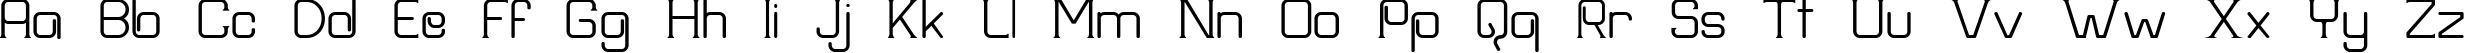 Пример написания английского алфавита шрифтом Frission